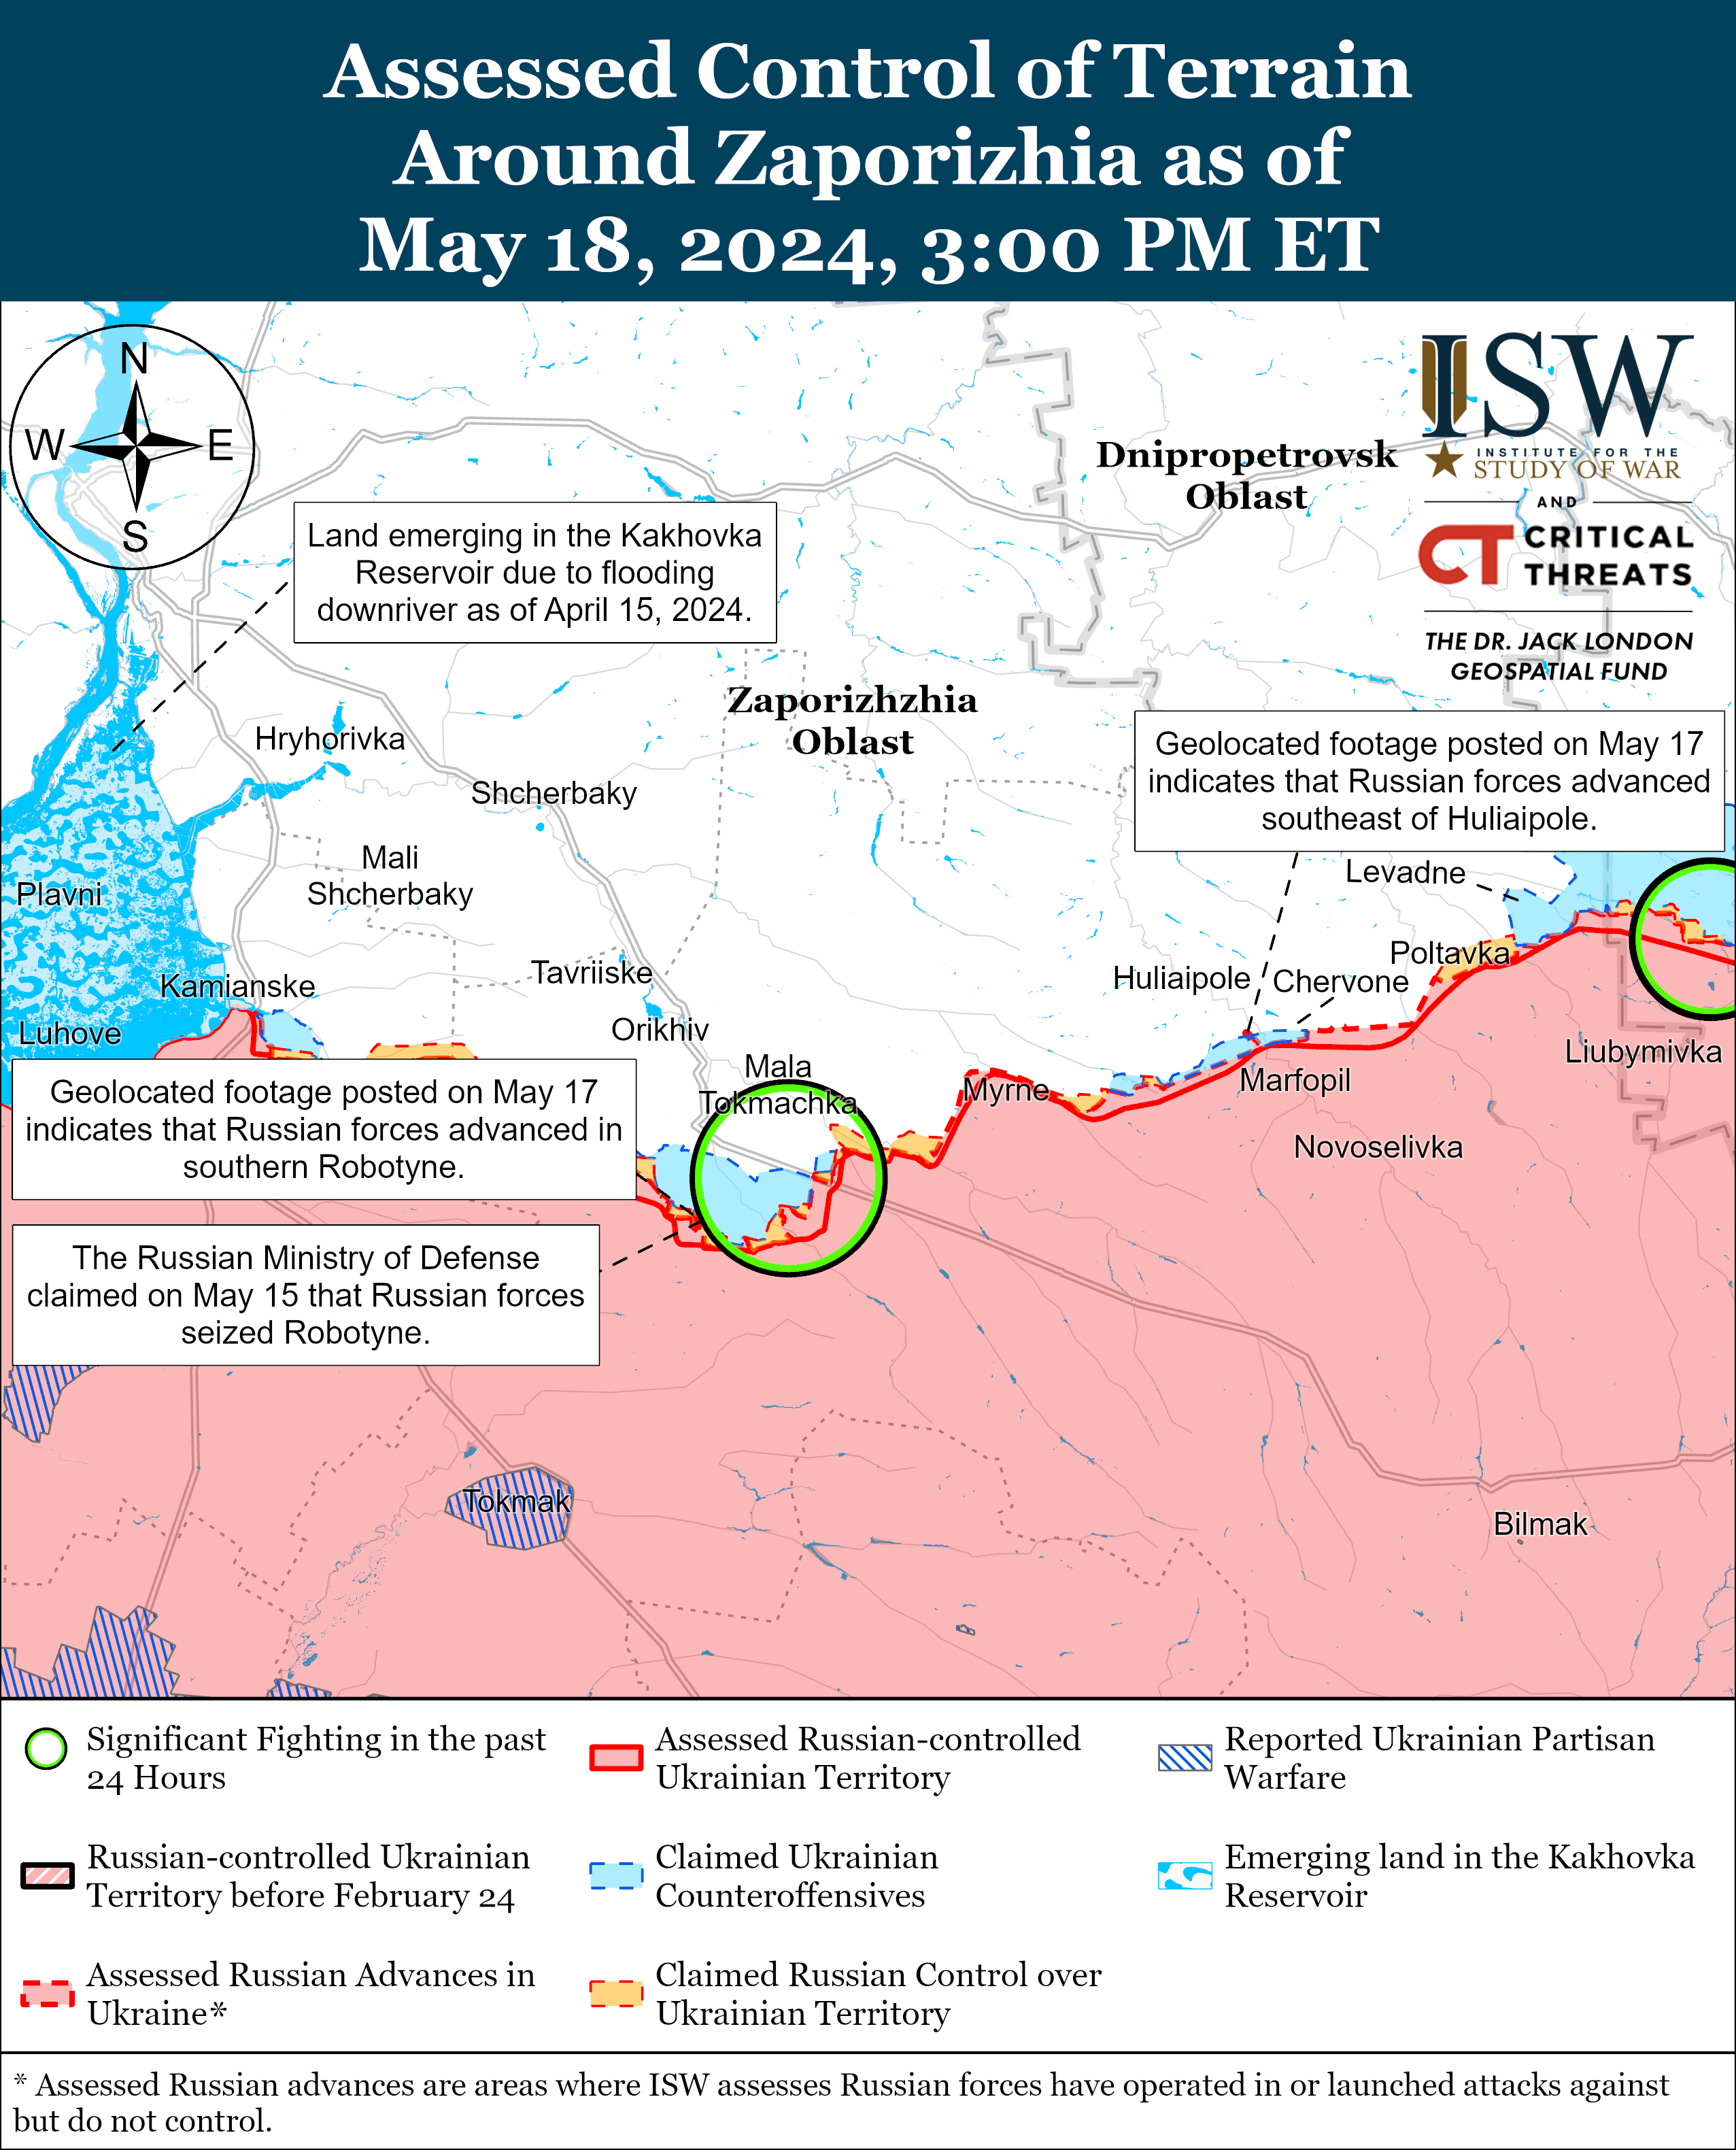 Российские войска не продвинулись ни на одном направлении в Харьковской области: карты ISW